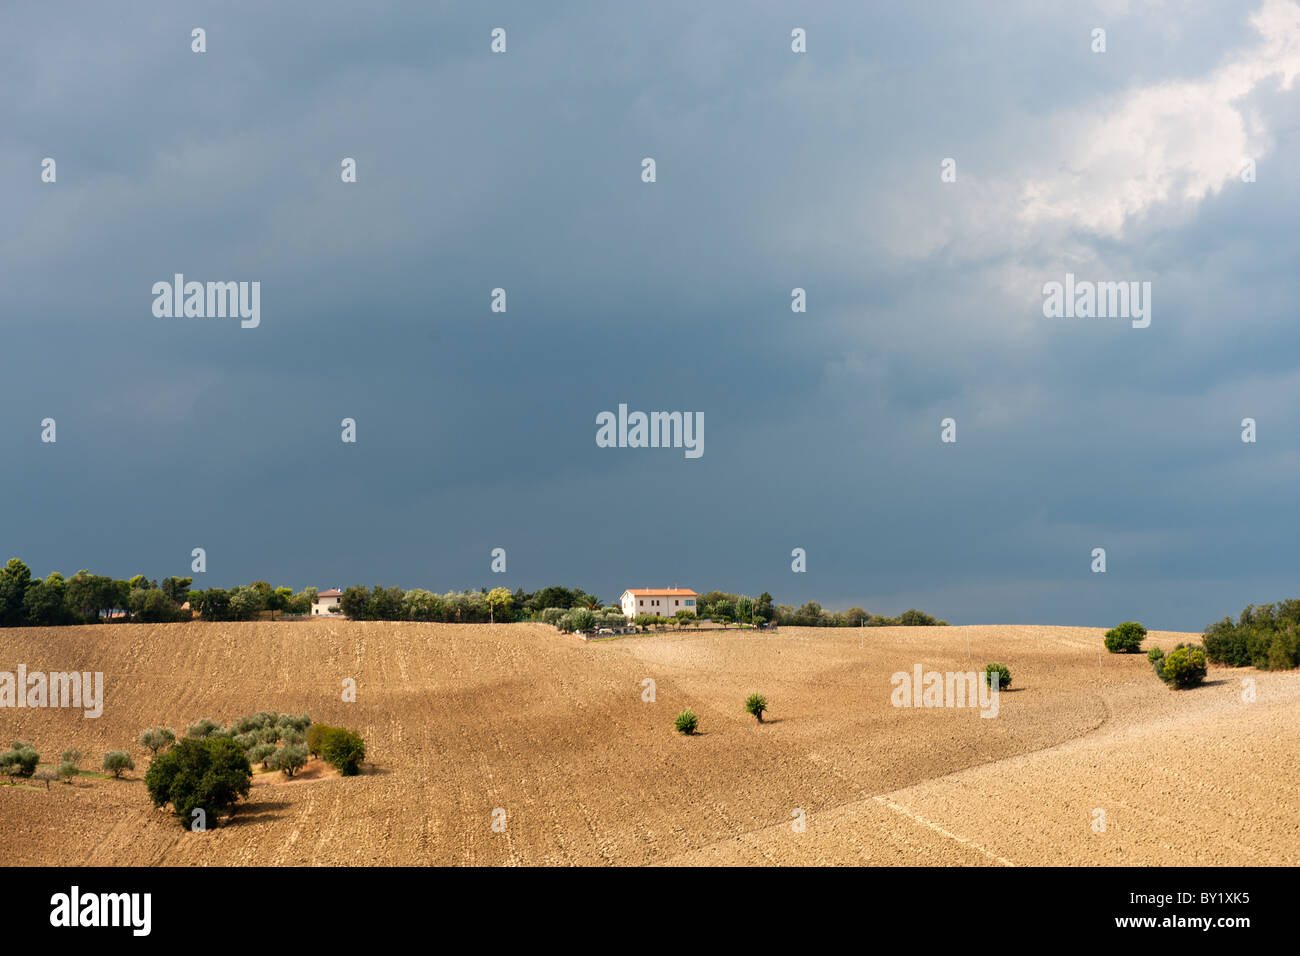 Dunklen Himmel hinter einer italienischen Landschaft mit einem Haus auf dem Hügel Stockfoto